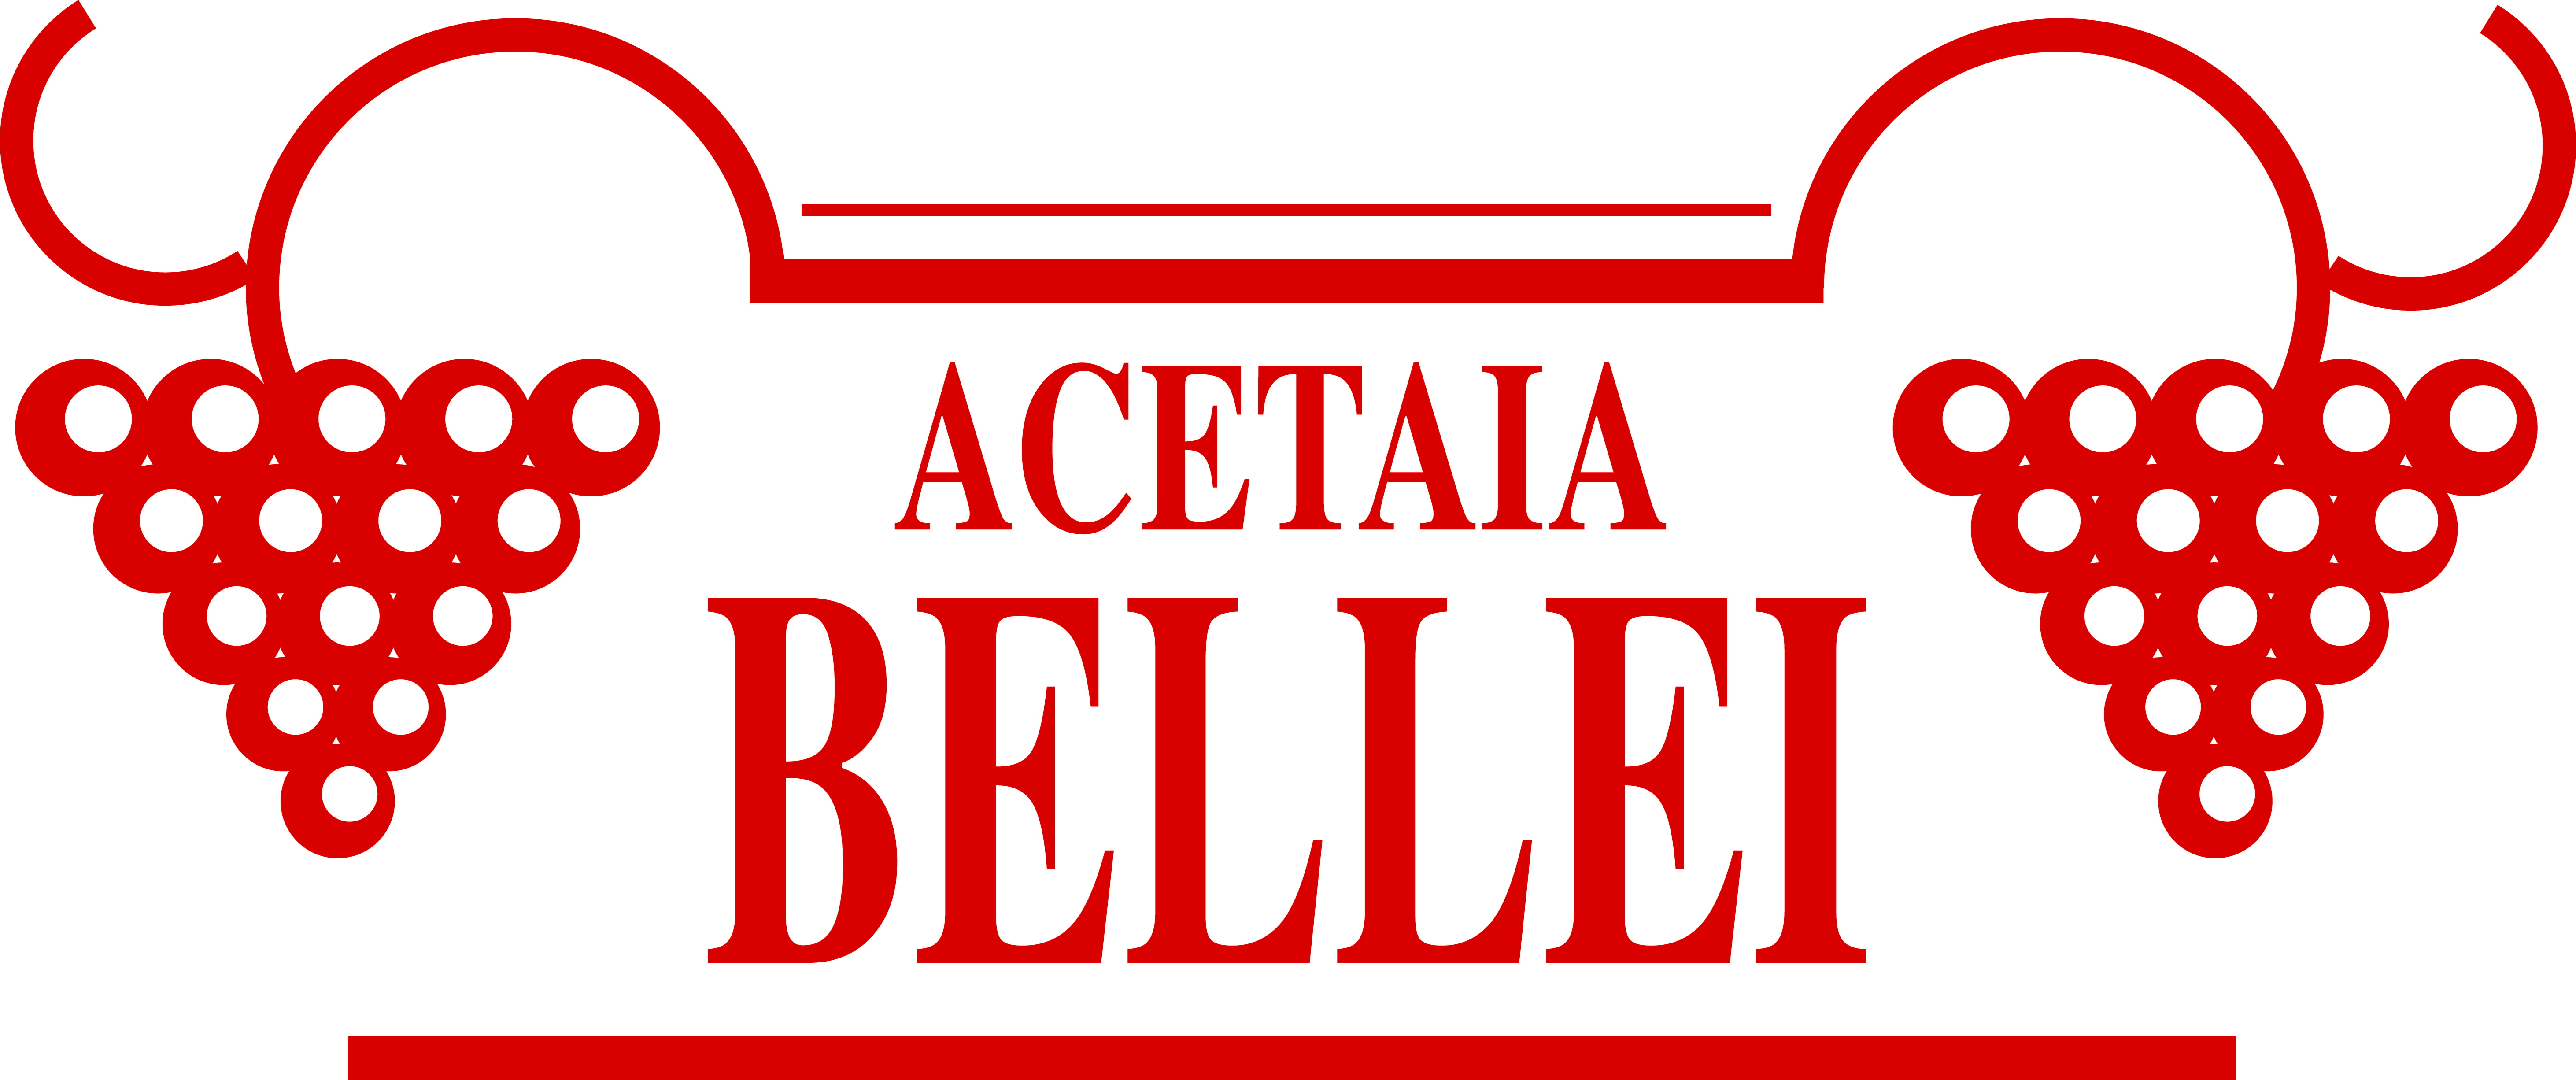 Bellei, Acetaia